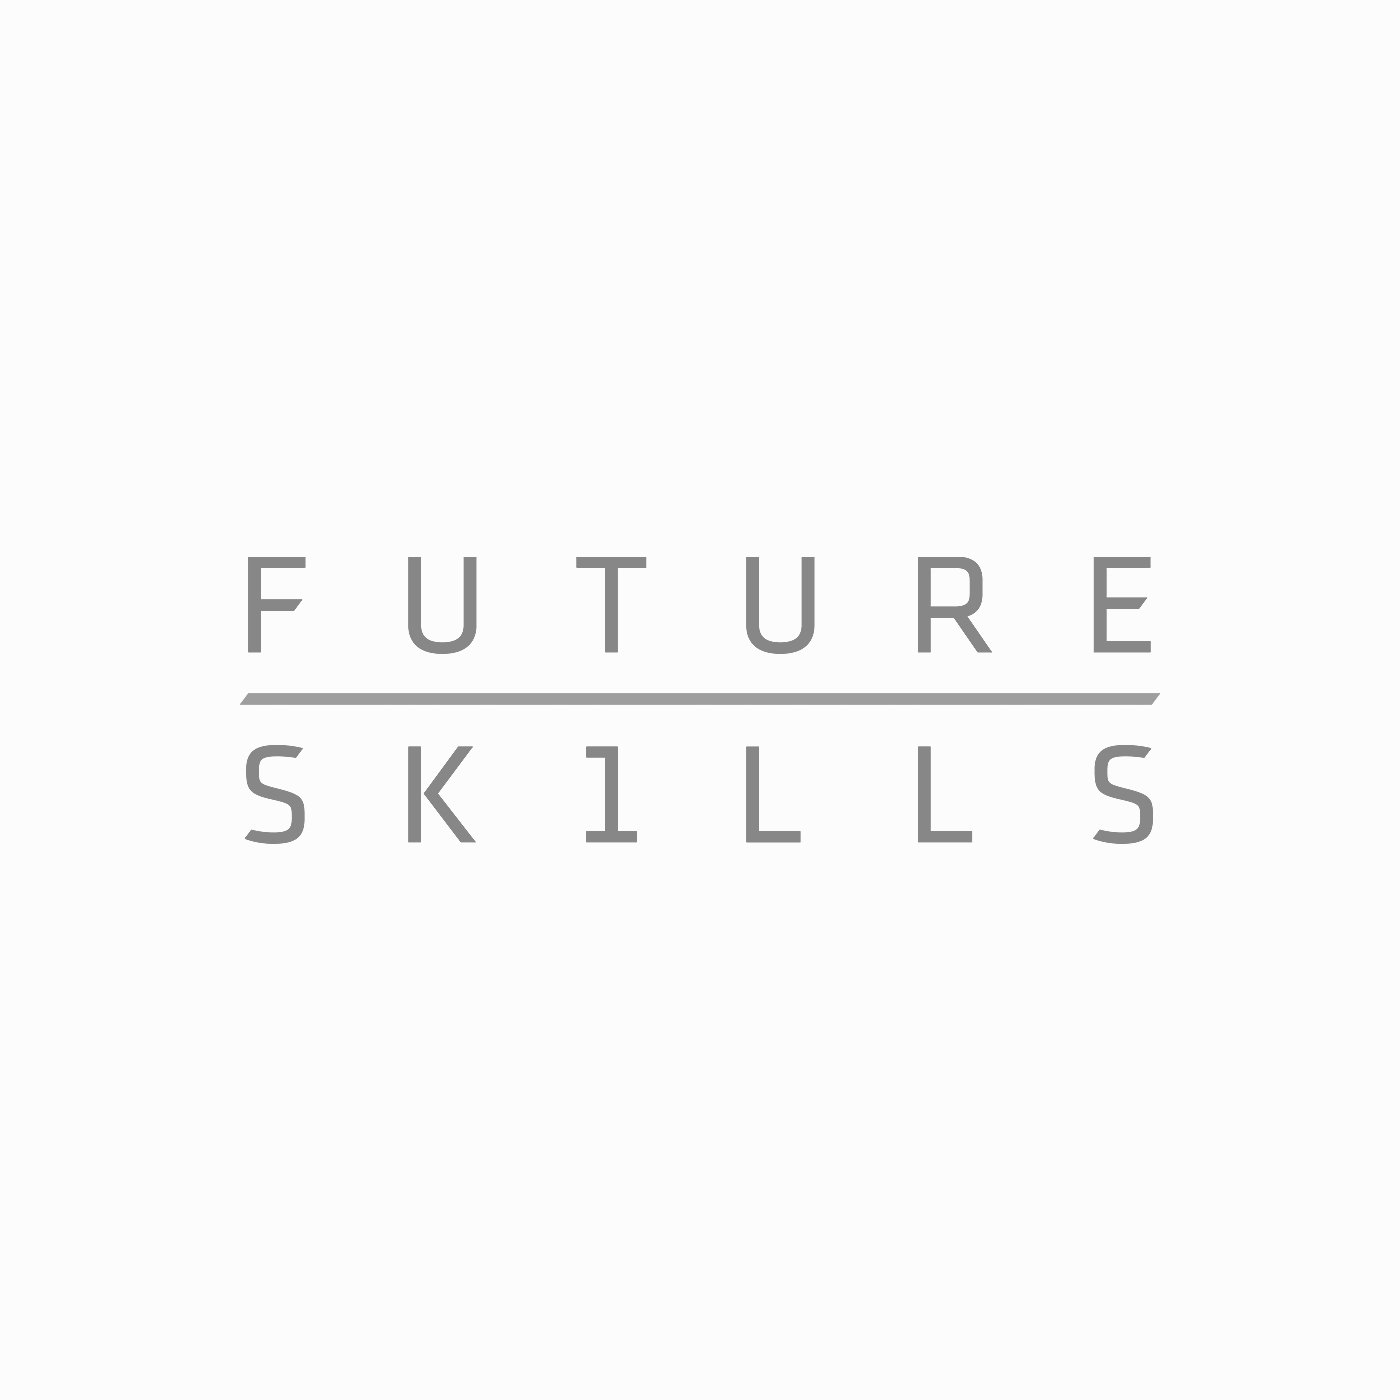 Future-skills-cases-design.jpg